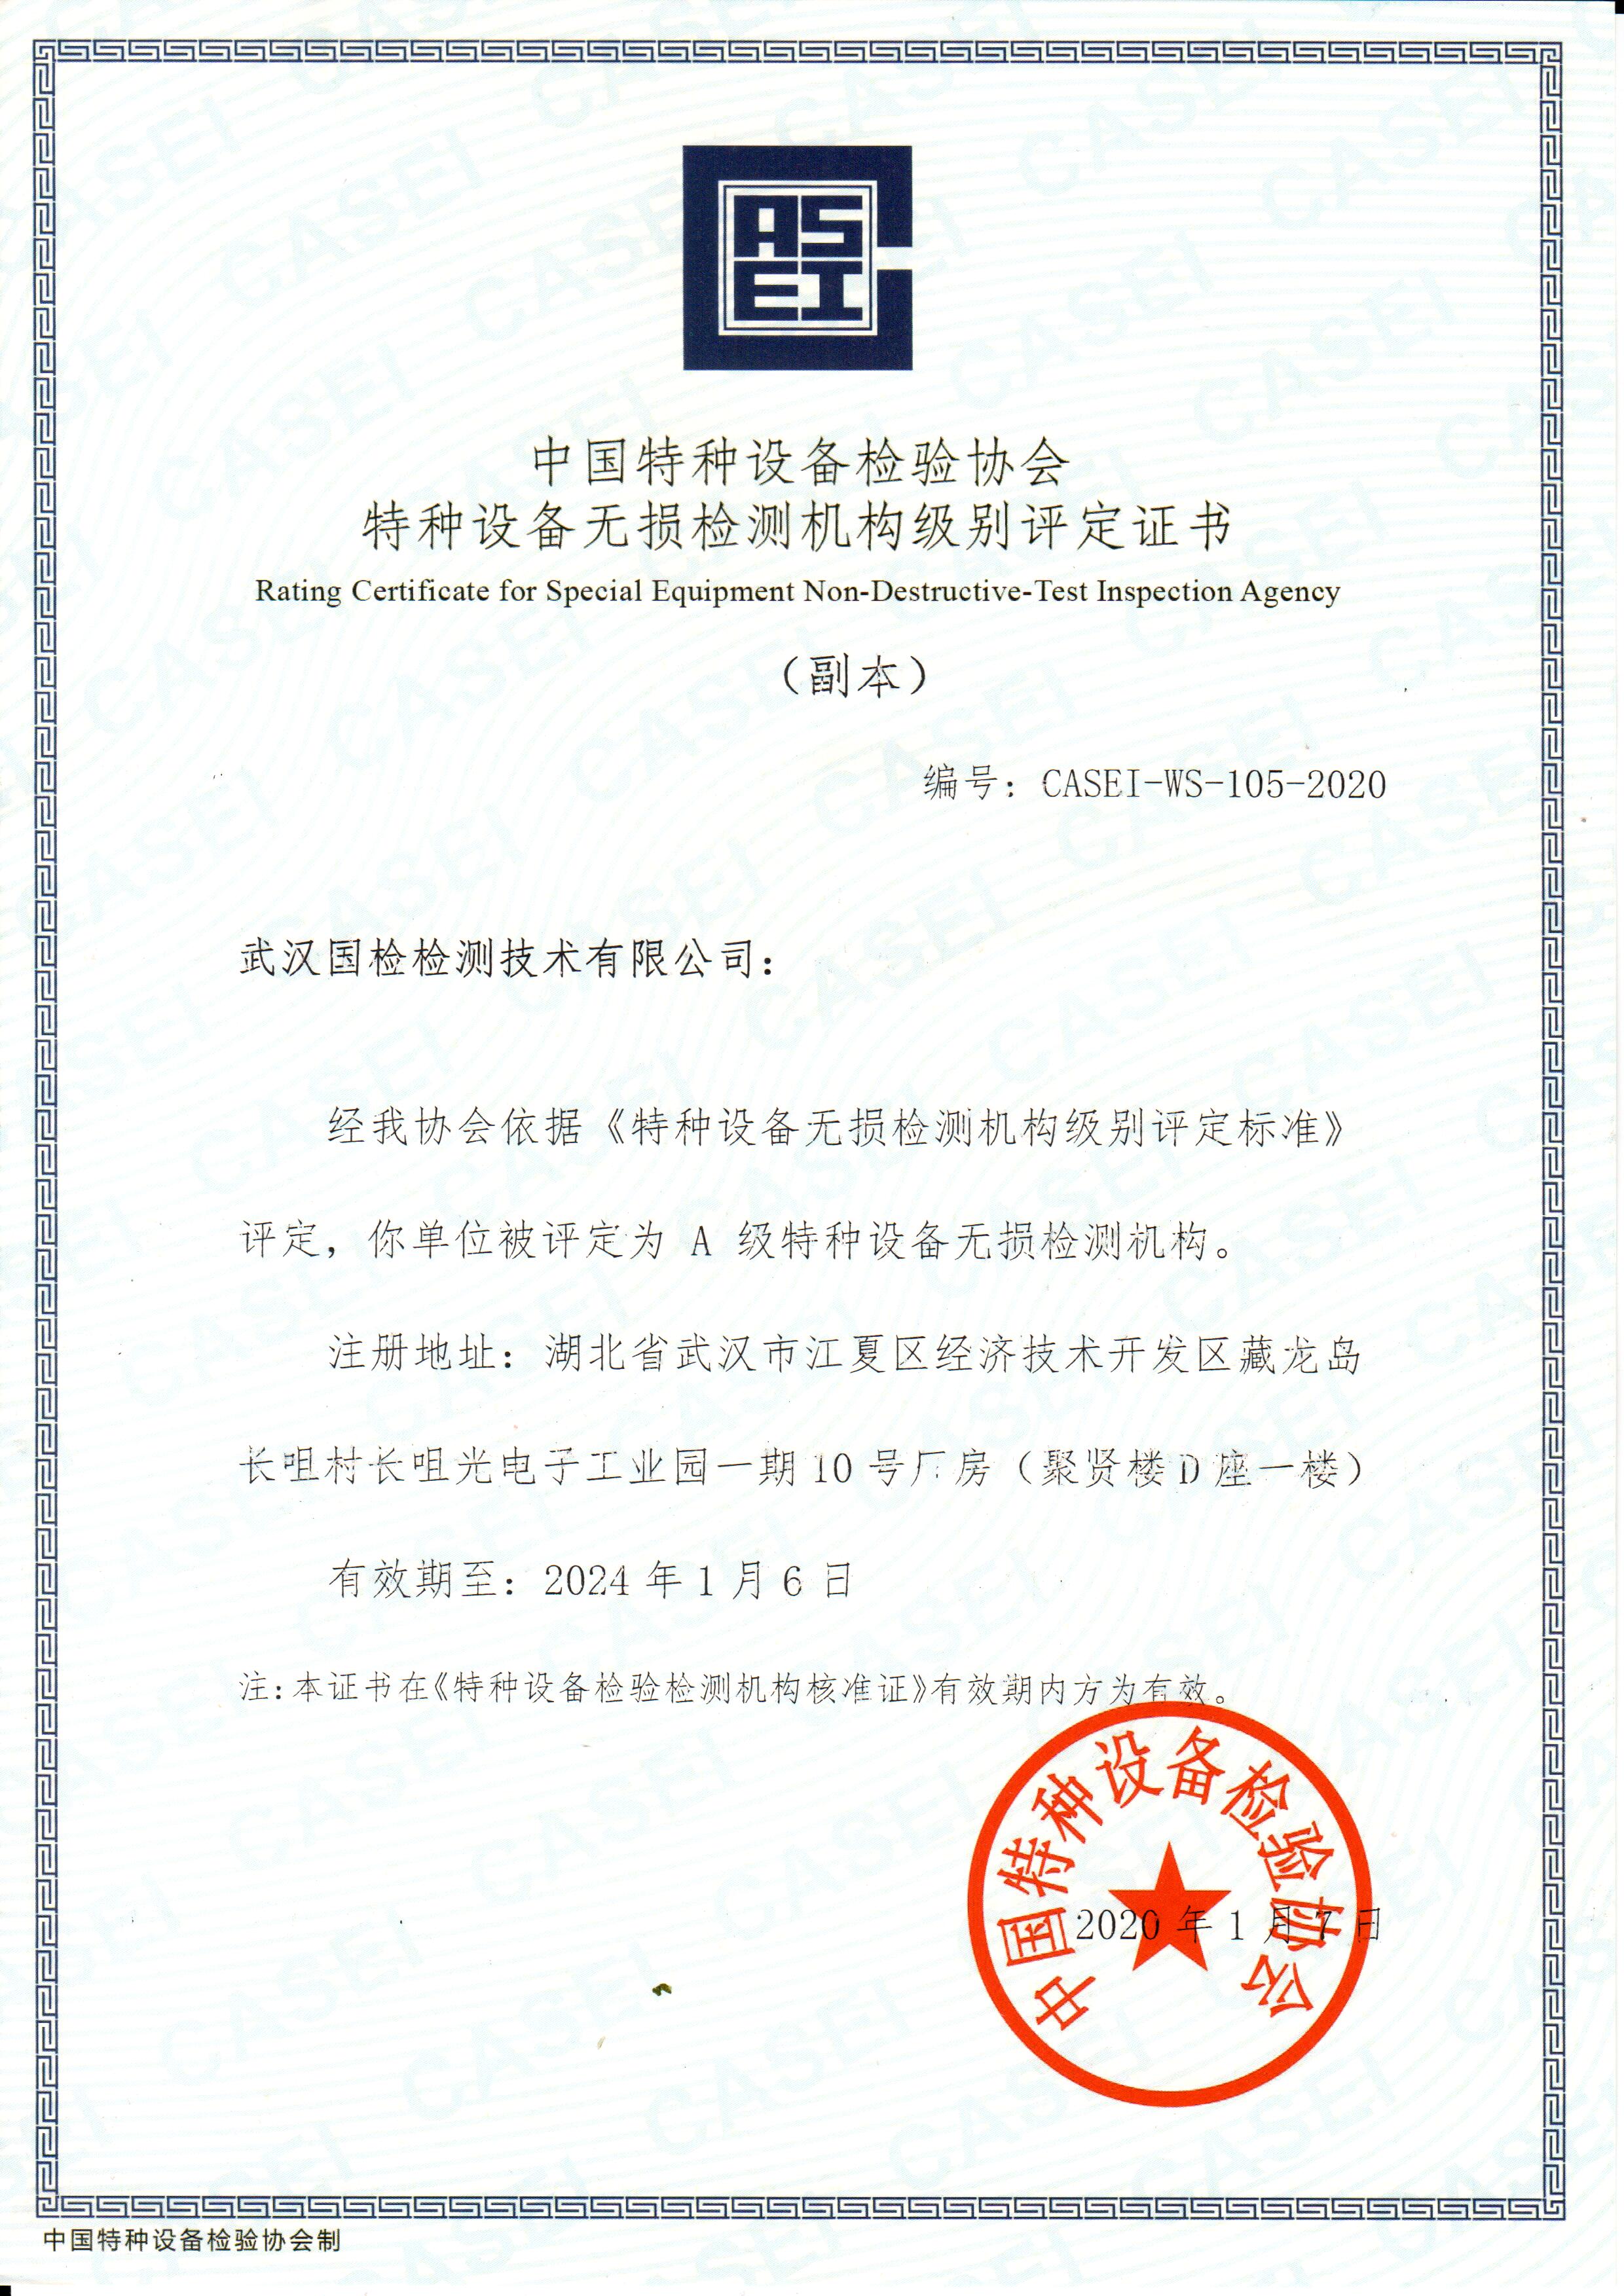 武汉博冠体育特种设备无损检测机构级别评定证书